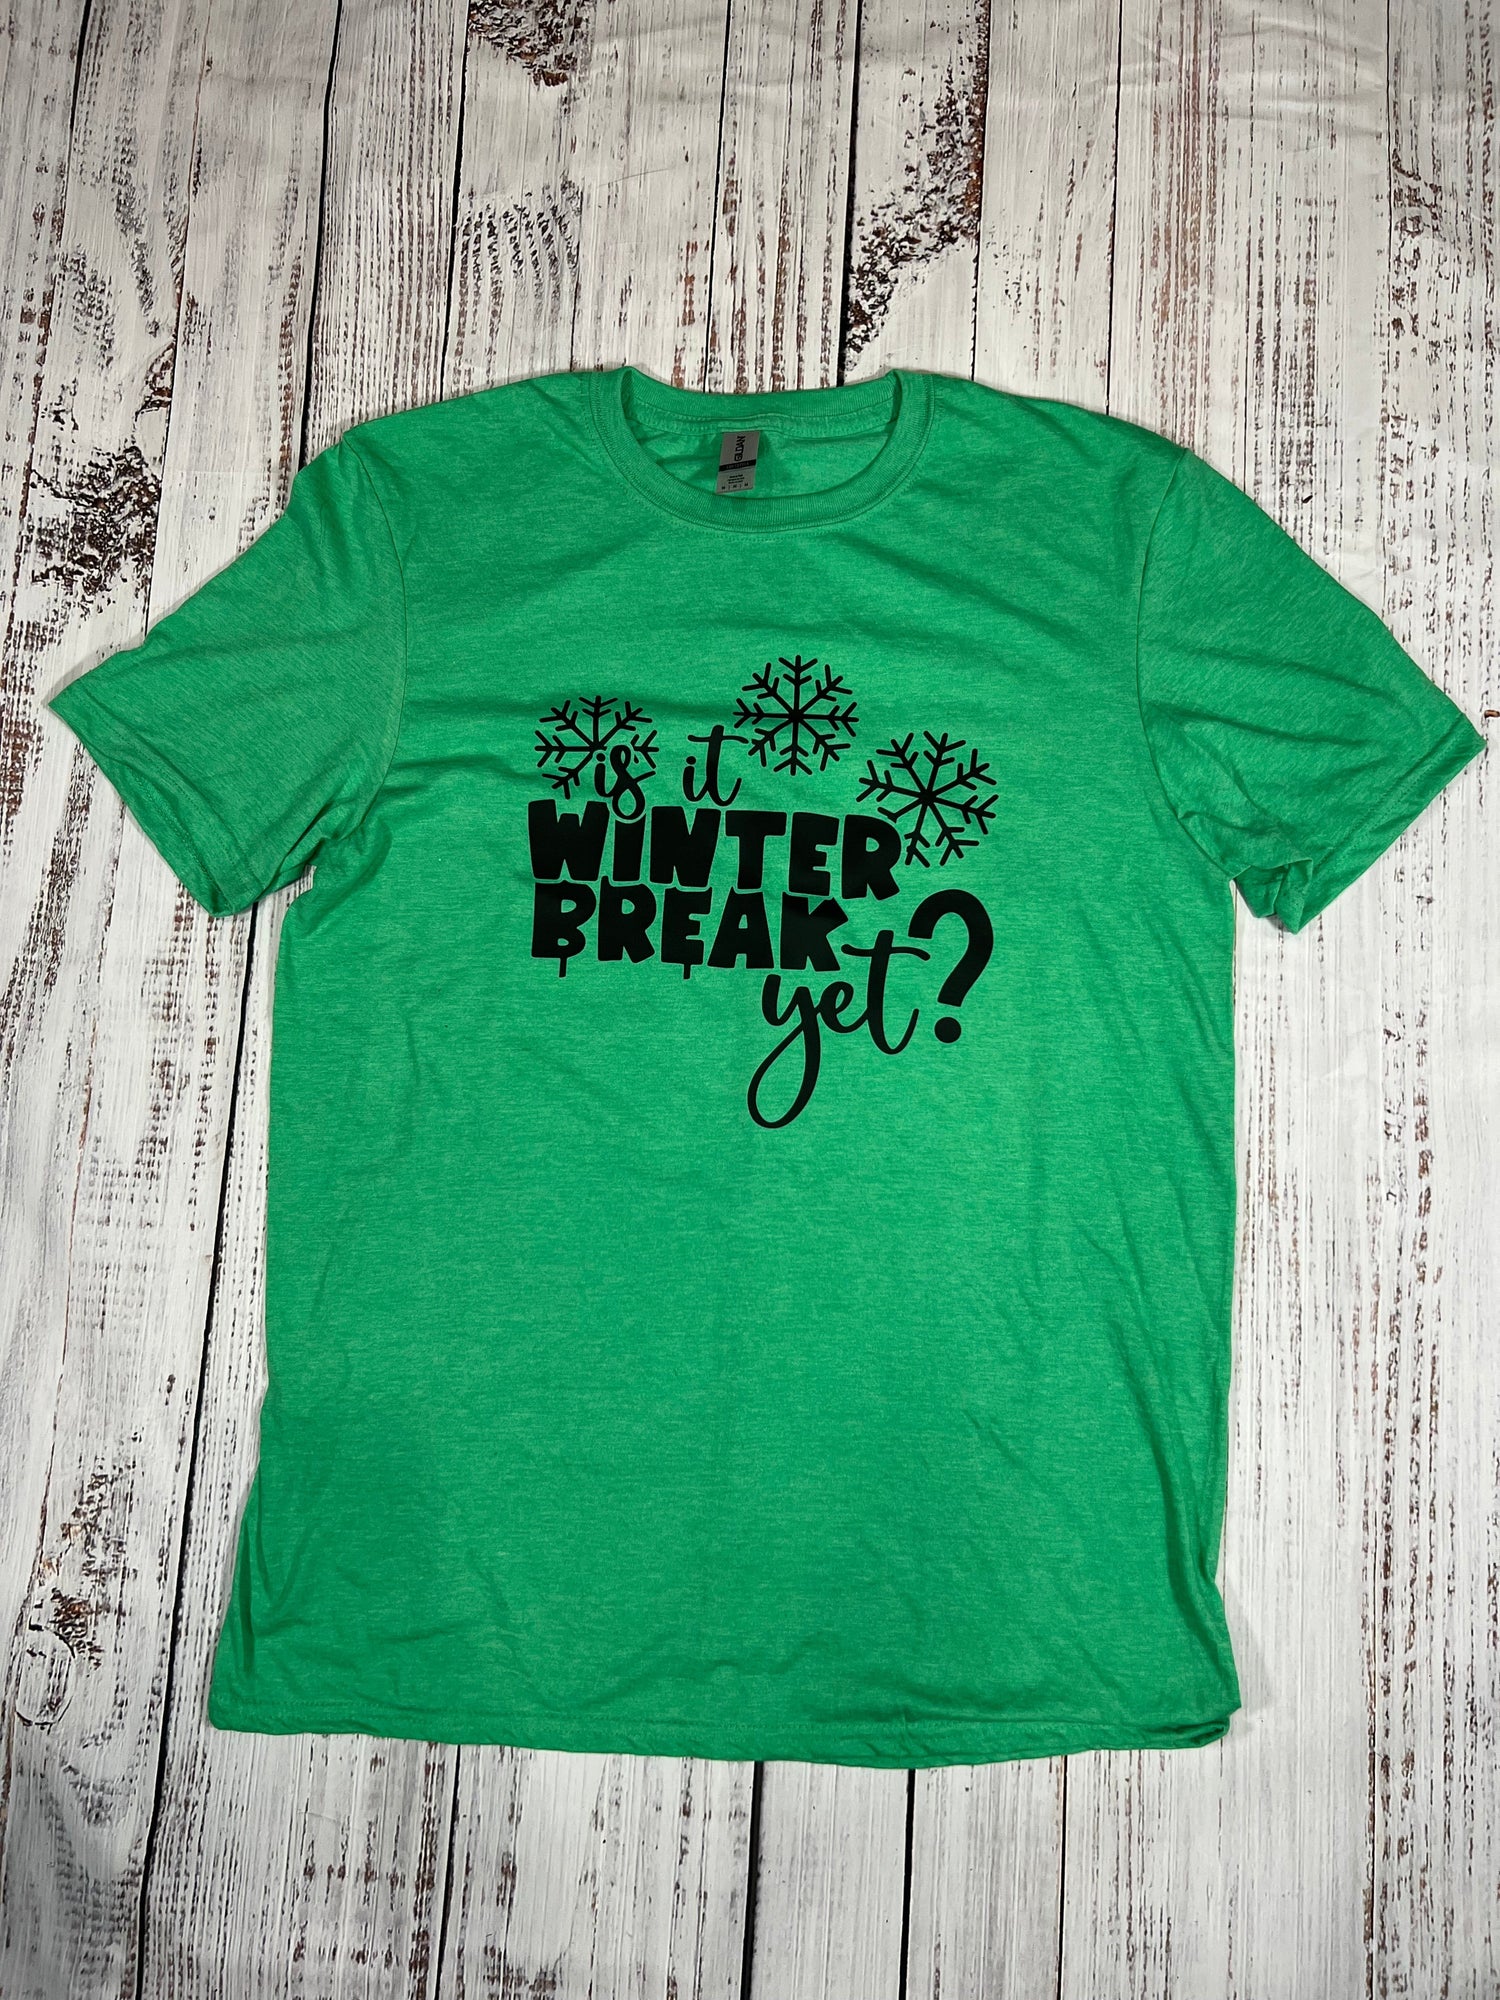 Is It Winter Break Yet? T-Shirt